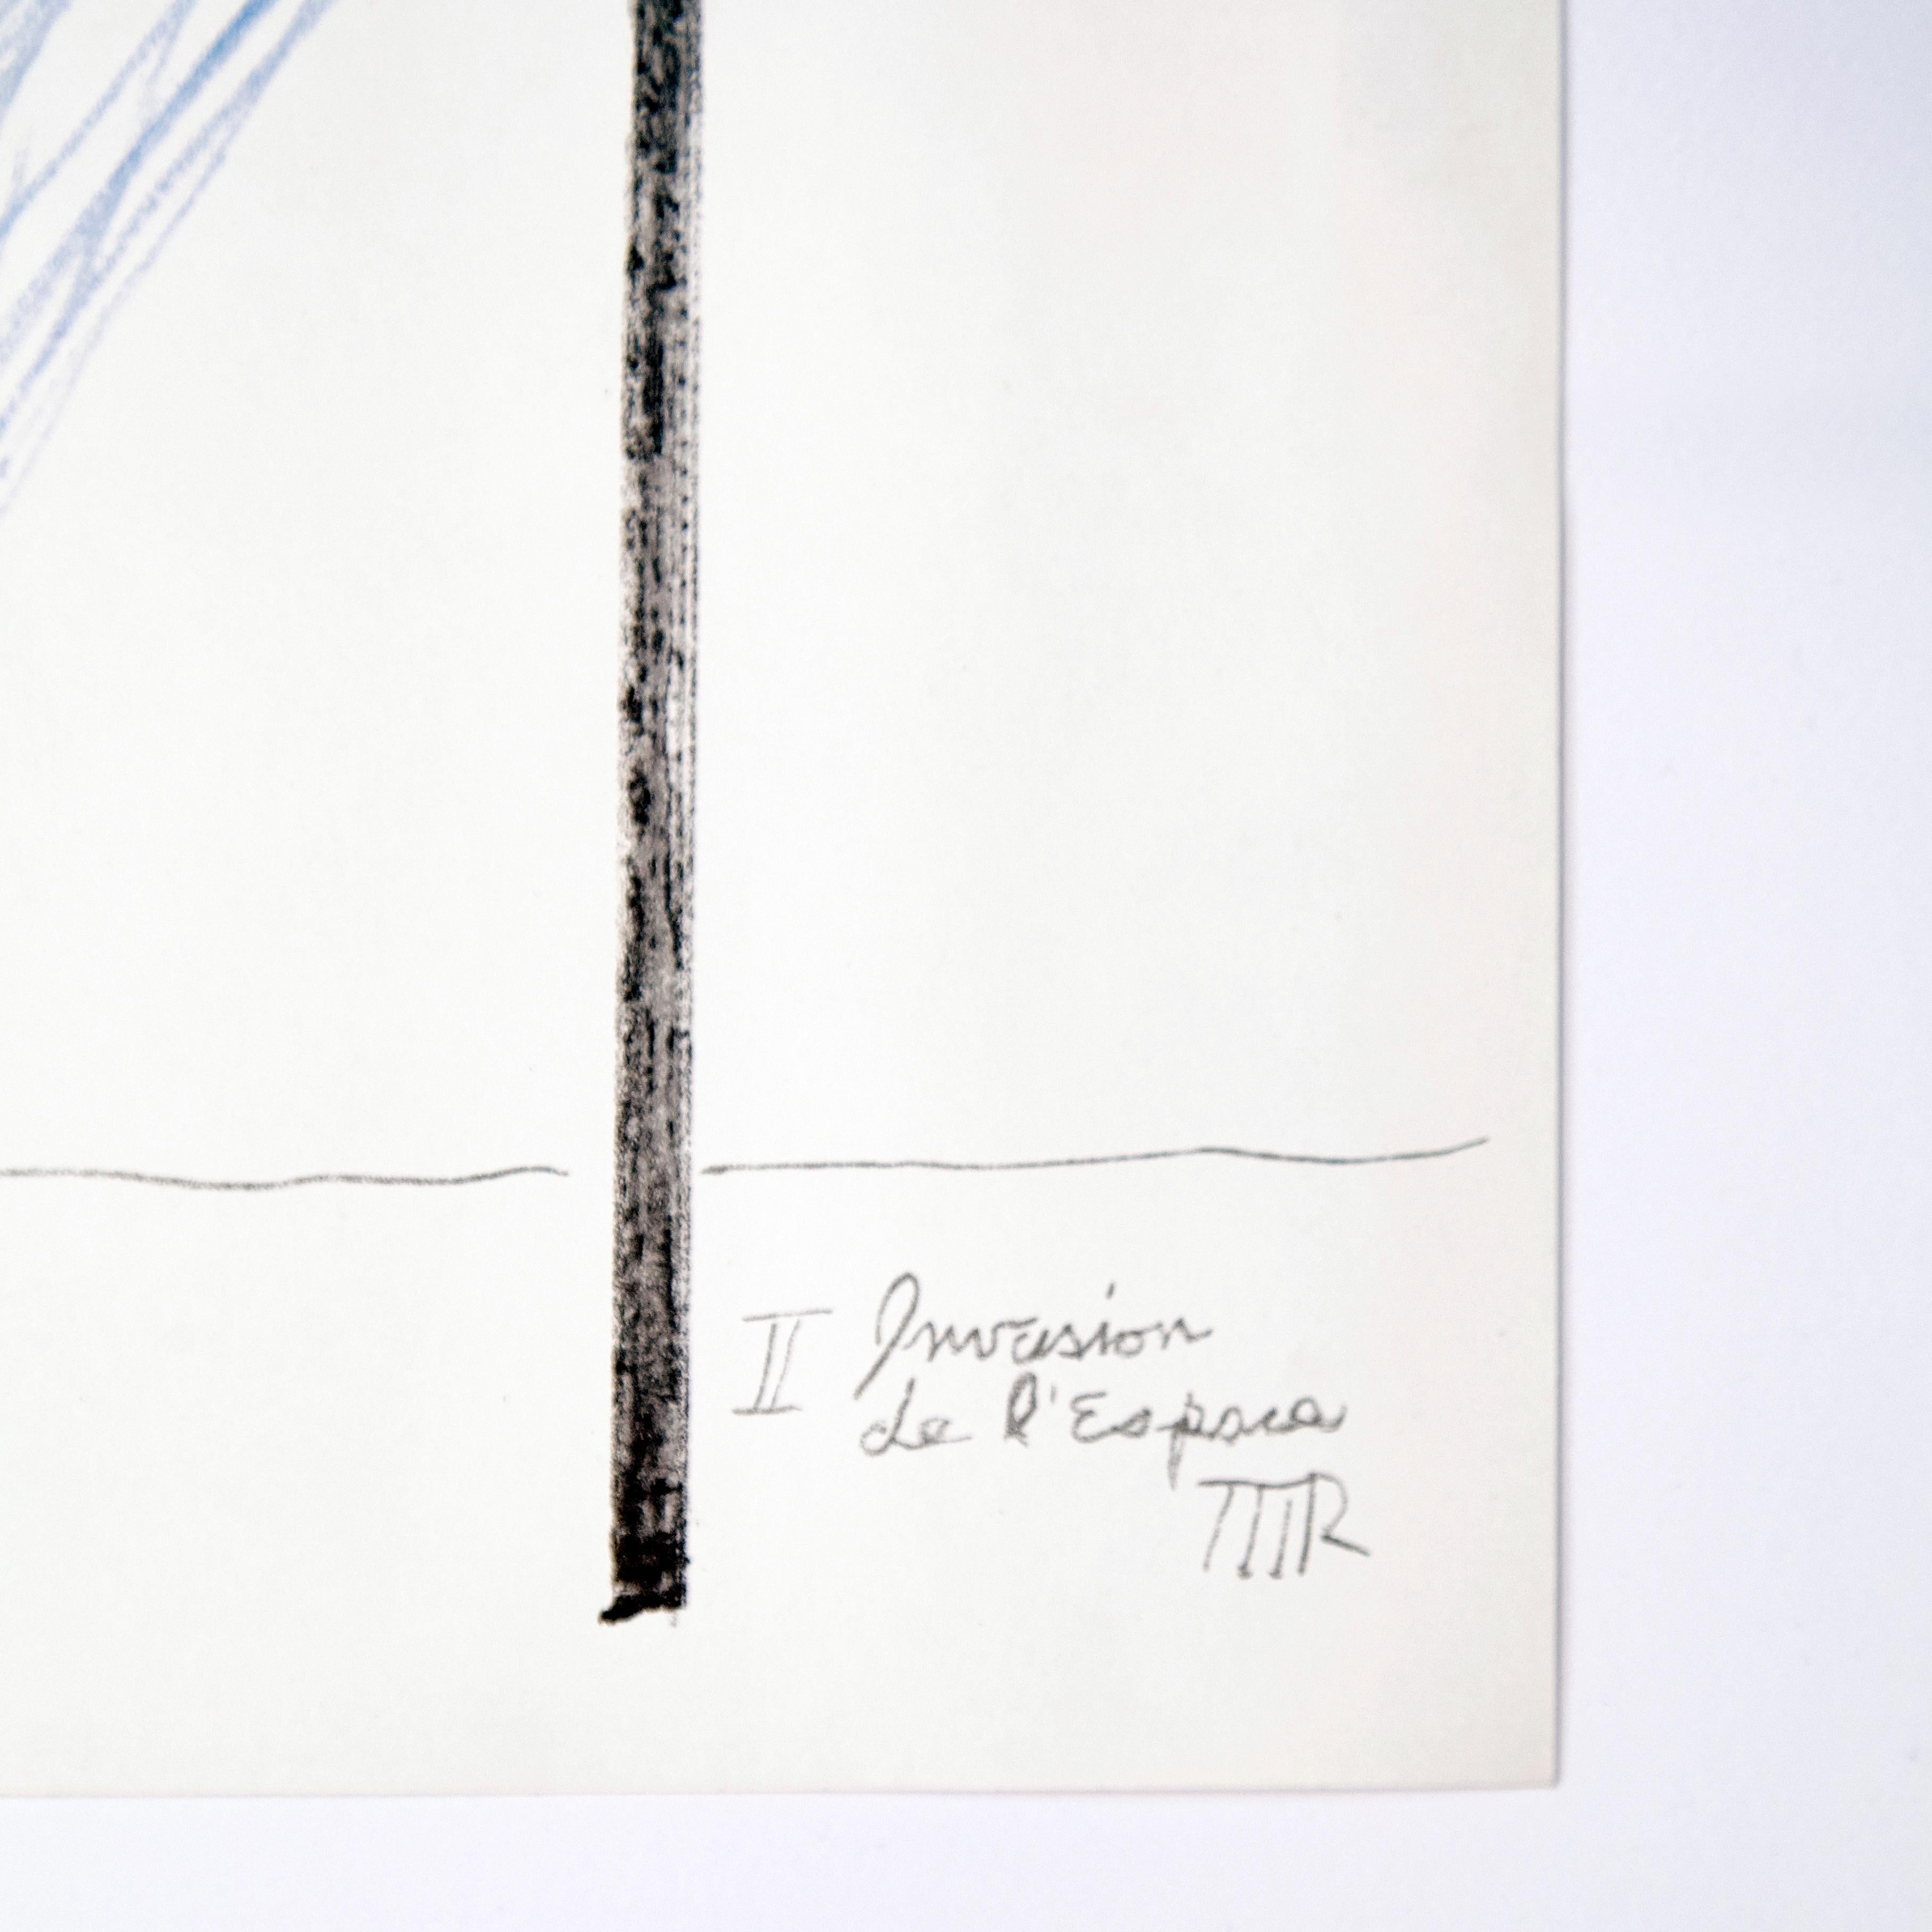 Lithografie von Man Ray, 1961.
Auf dem Stein signiert.

Man Ray (1890-1976) war ein amerikanischer bildender Künstler, der den größten Teil seiner Karriere in Frankreich verbrachte. Er leistete einen bedeutenden Beitrag zur Dada- und